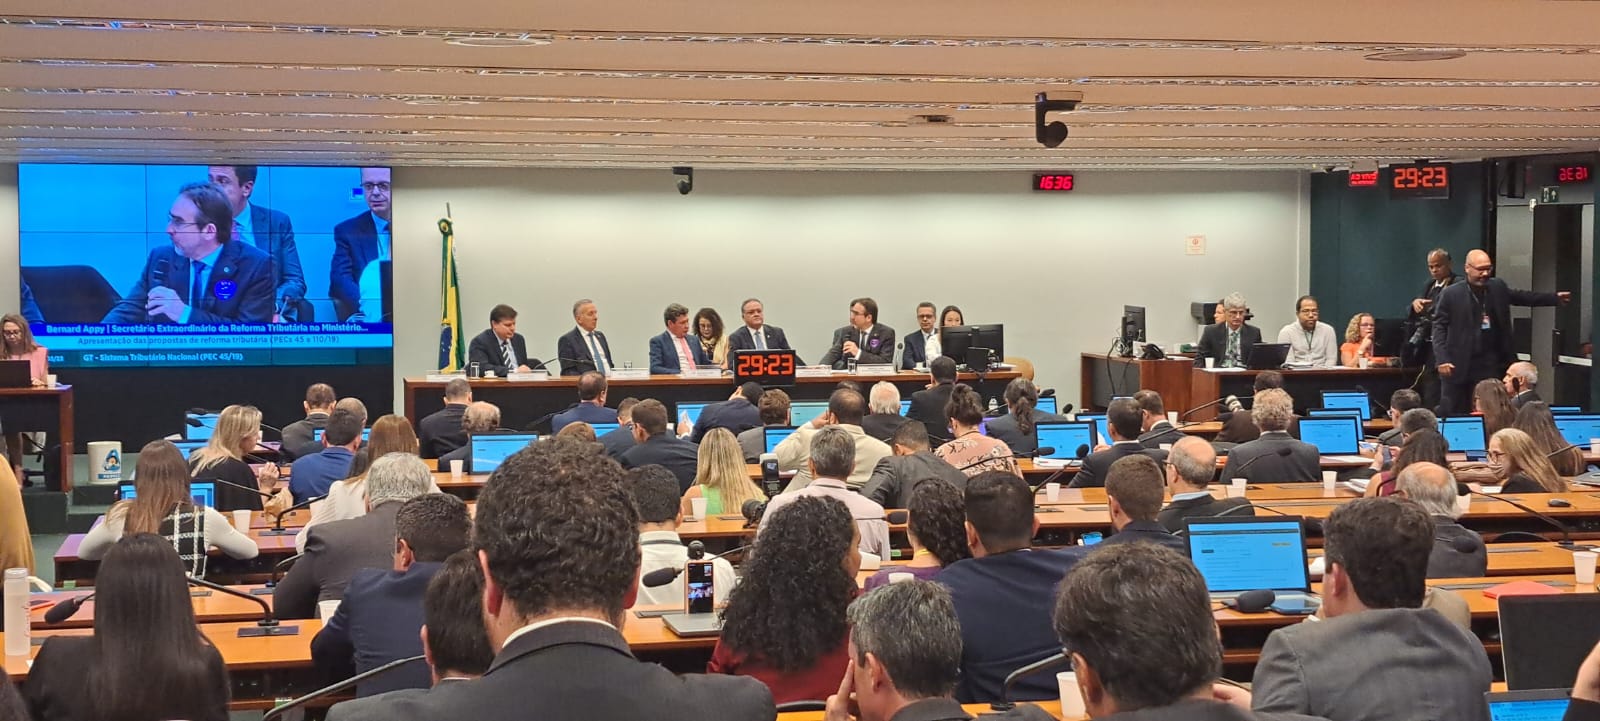 Audiência pública sobre reforma tributária é realizada na Câmara dos Deputados, em Brasília - Foto: Izaias Godinho/TV Norte Brasília